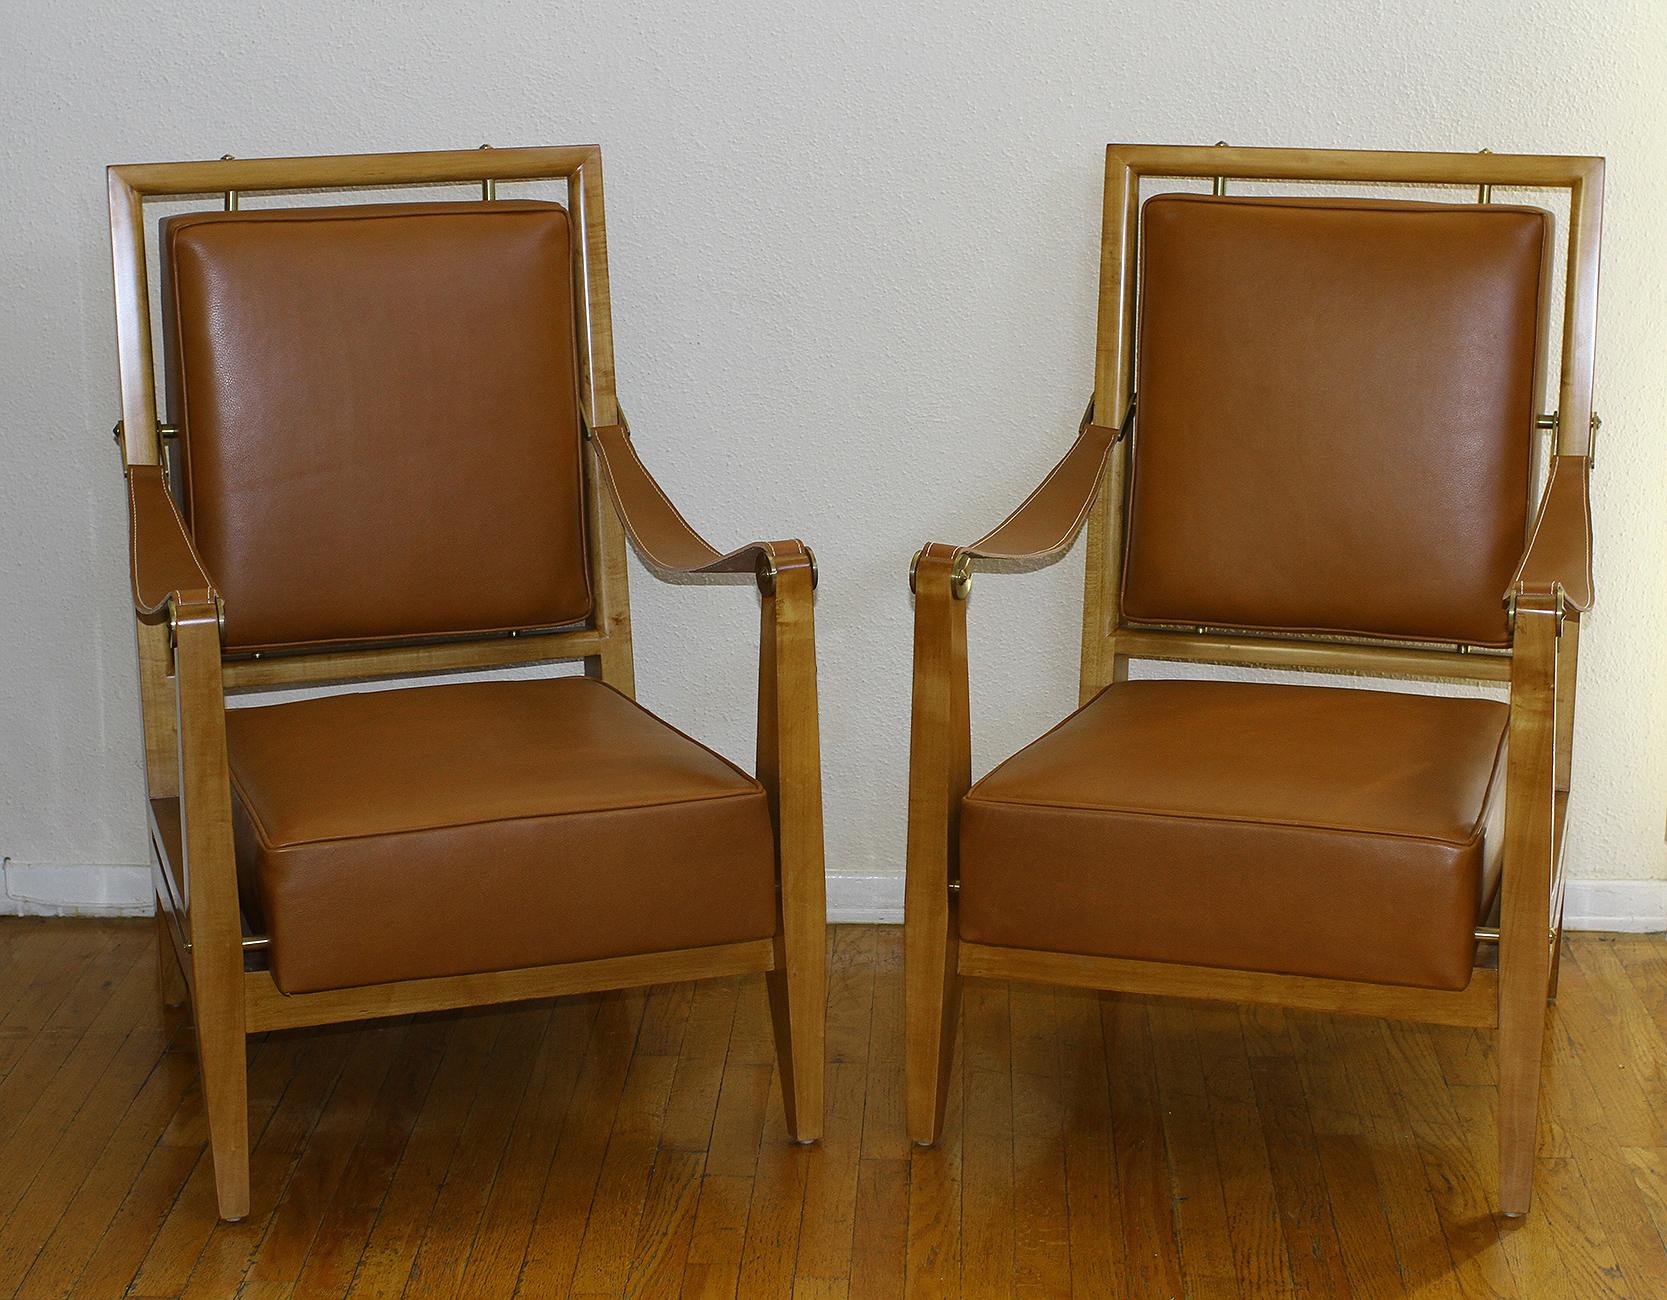 MAXIME ALT (1910 - 1991)

Ein Paar Stühle aus dem Hotel Marhaba in Marokko, Frankreich 1953

Außergewöhnliches und äußerst seltenes Paar Maxime Old Stühle aus dem Hotel Marhaba in Marokko.

Die Stühle wurden 1953 von Maxime Old in Frankreich